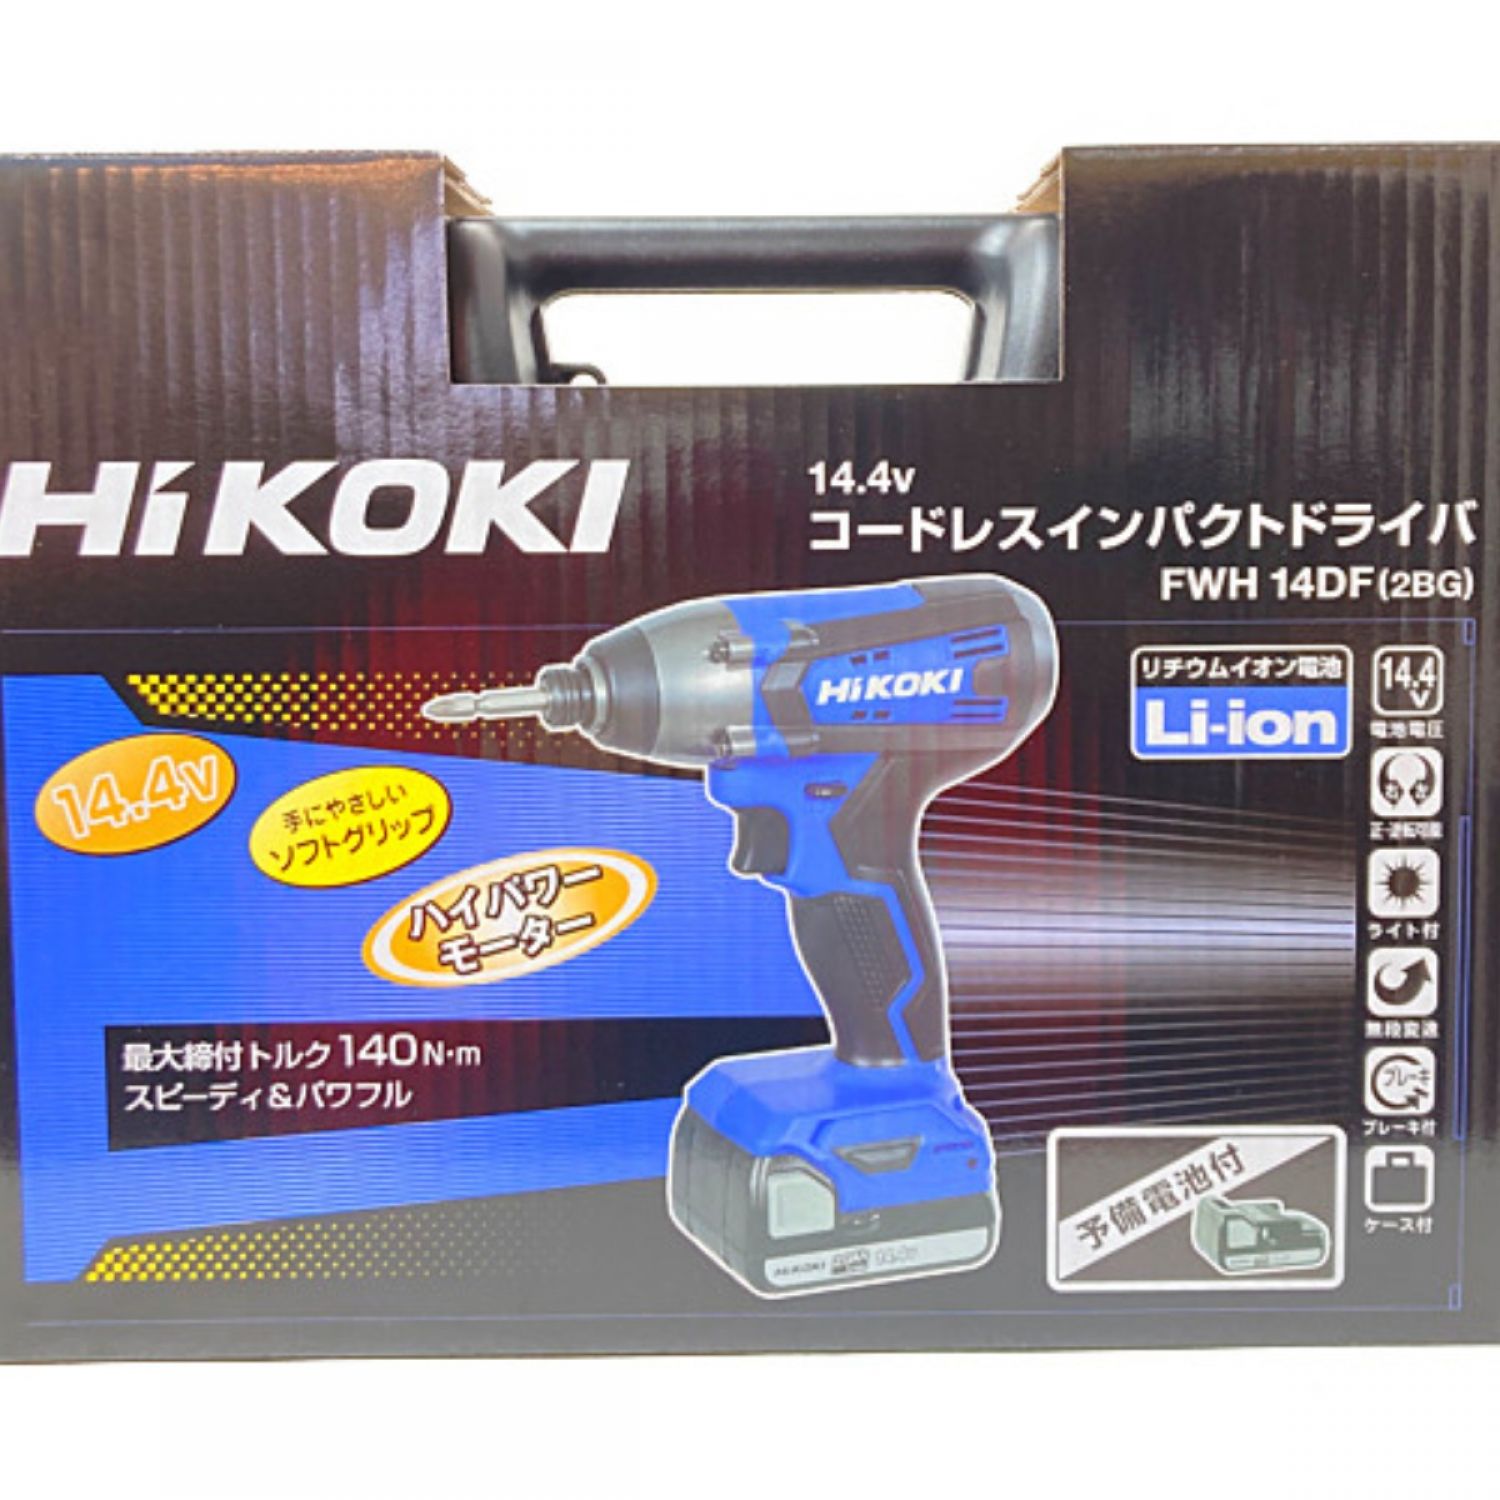 HiKOKI(ハイコーキ) 14.4V コードレスインパクト ドライバ ブルー www